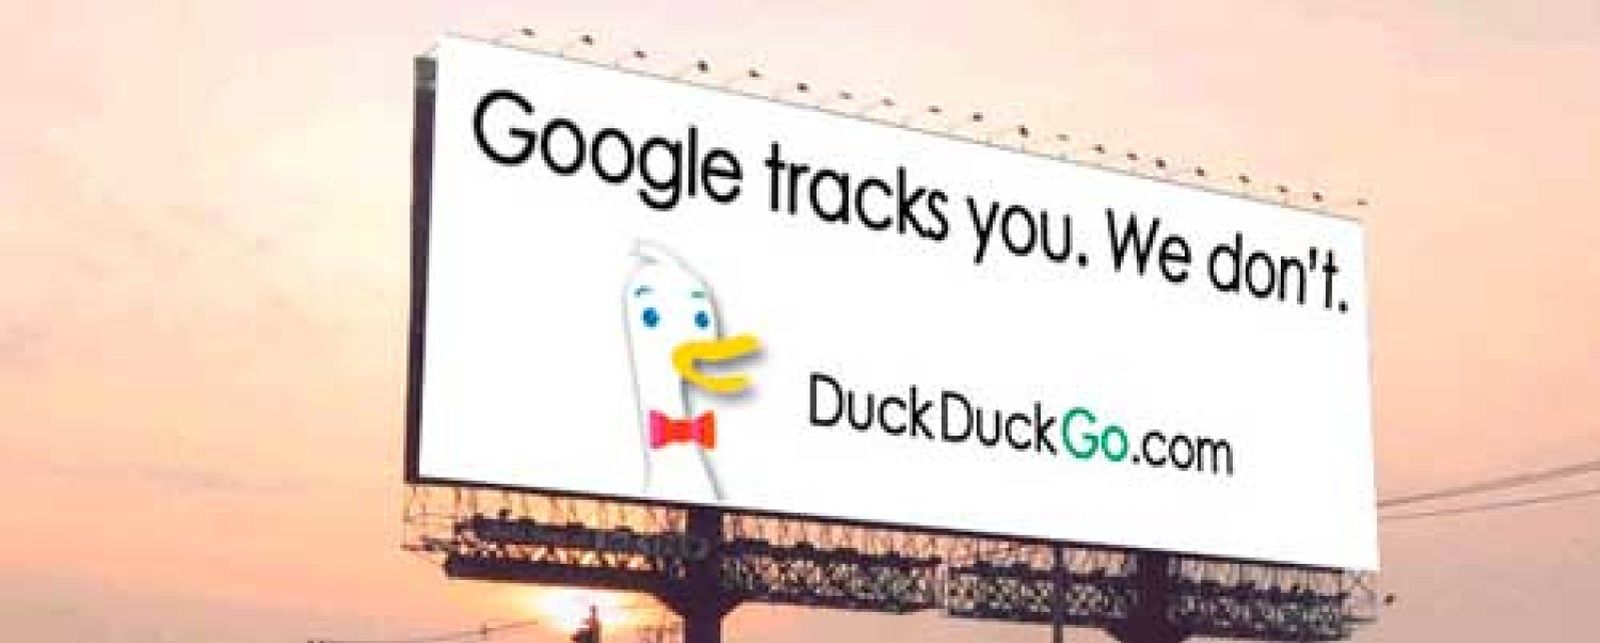 Foto: ¿Harto de que Google se quede con tus datos? Prueba con DuckDuckGo